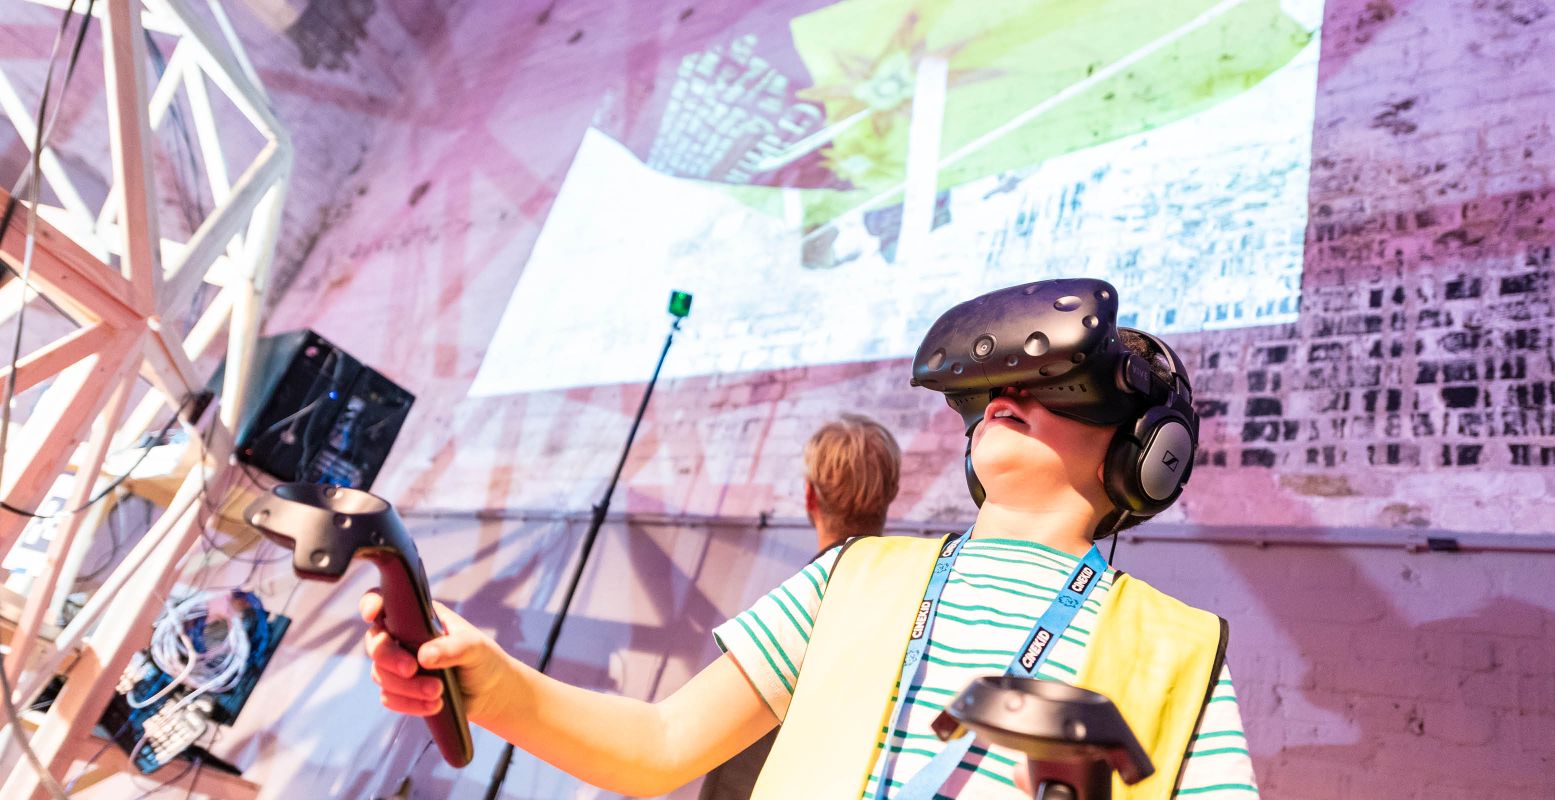 Stap in de wonderlijke wereld van VR. Foto: CineKid Festival © Max Kneefel